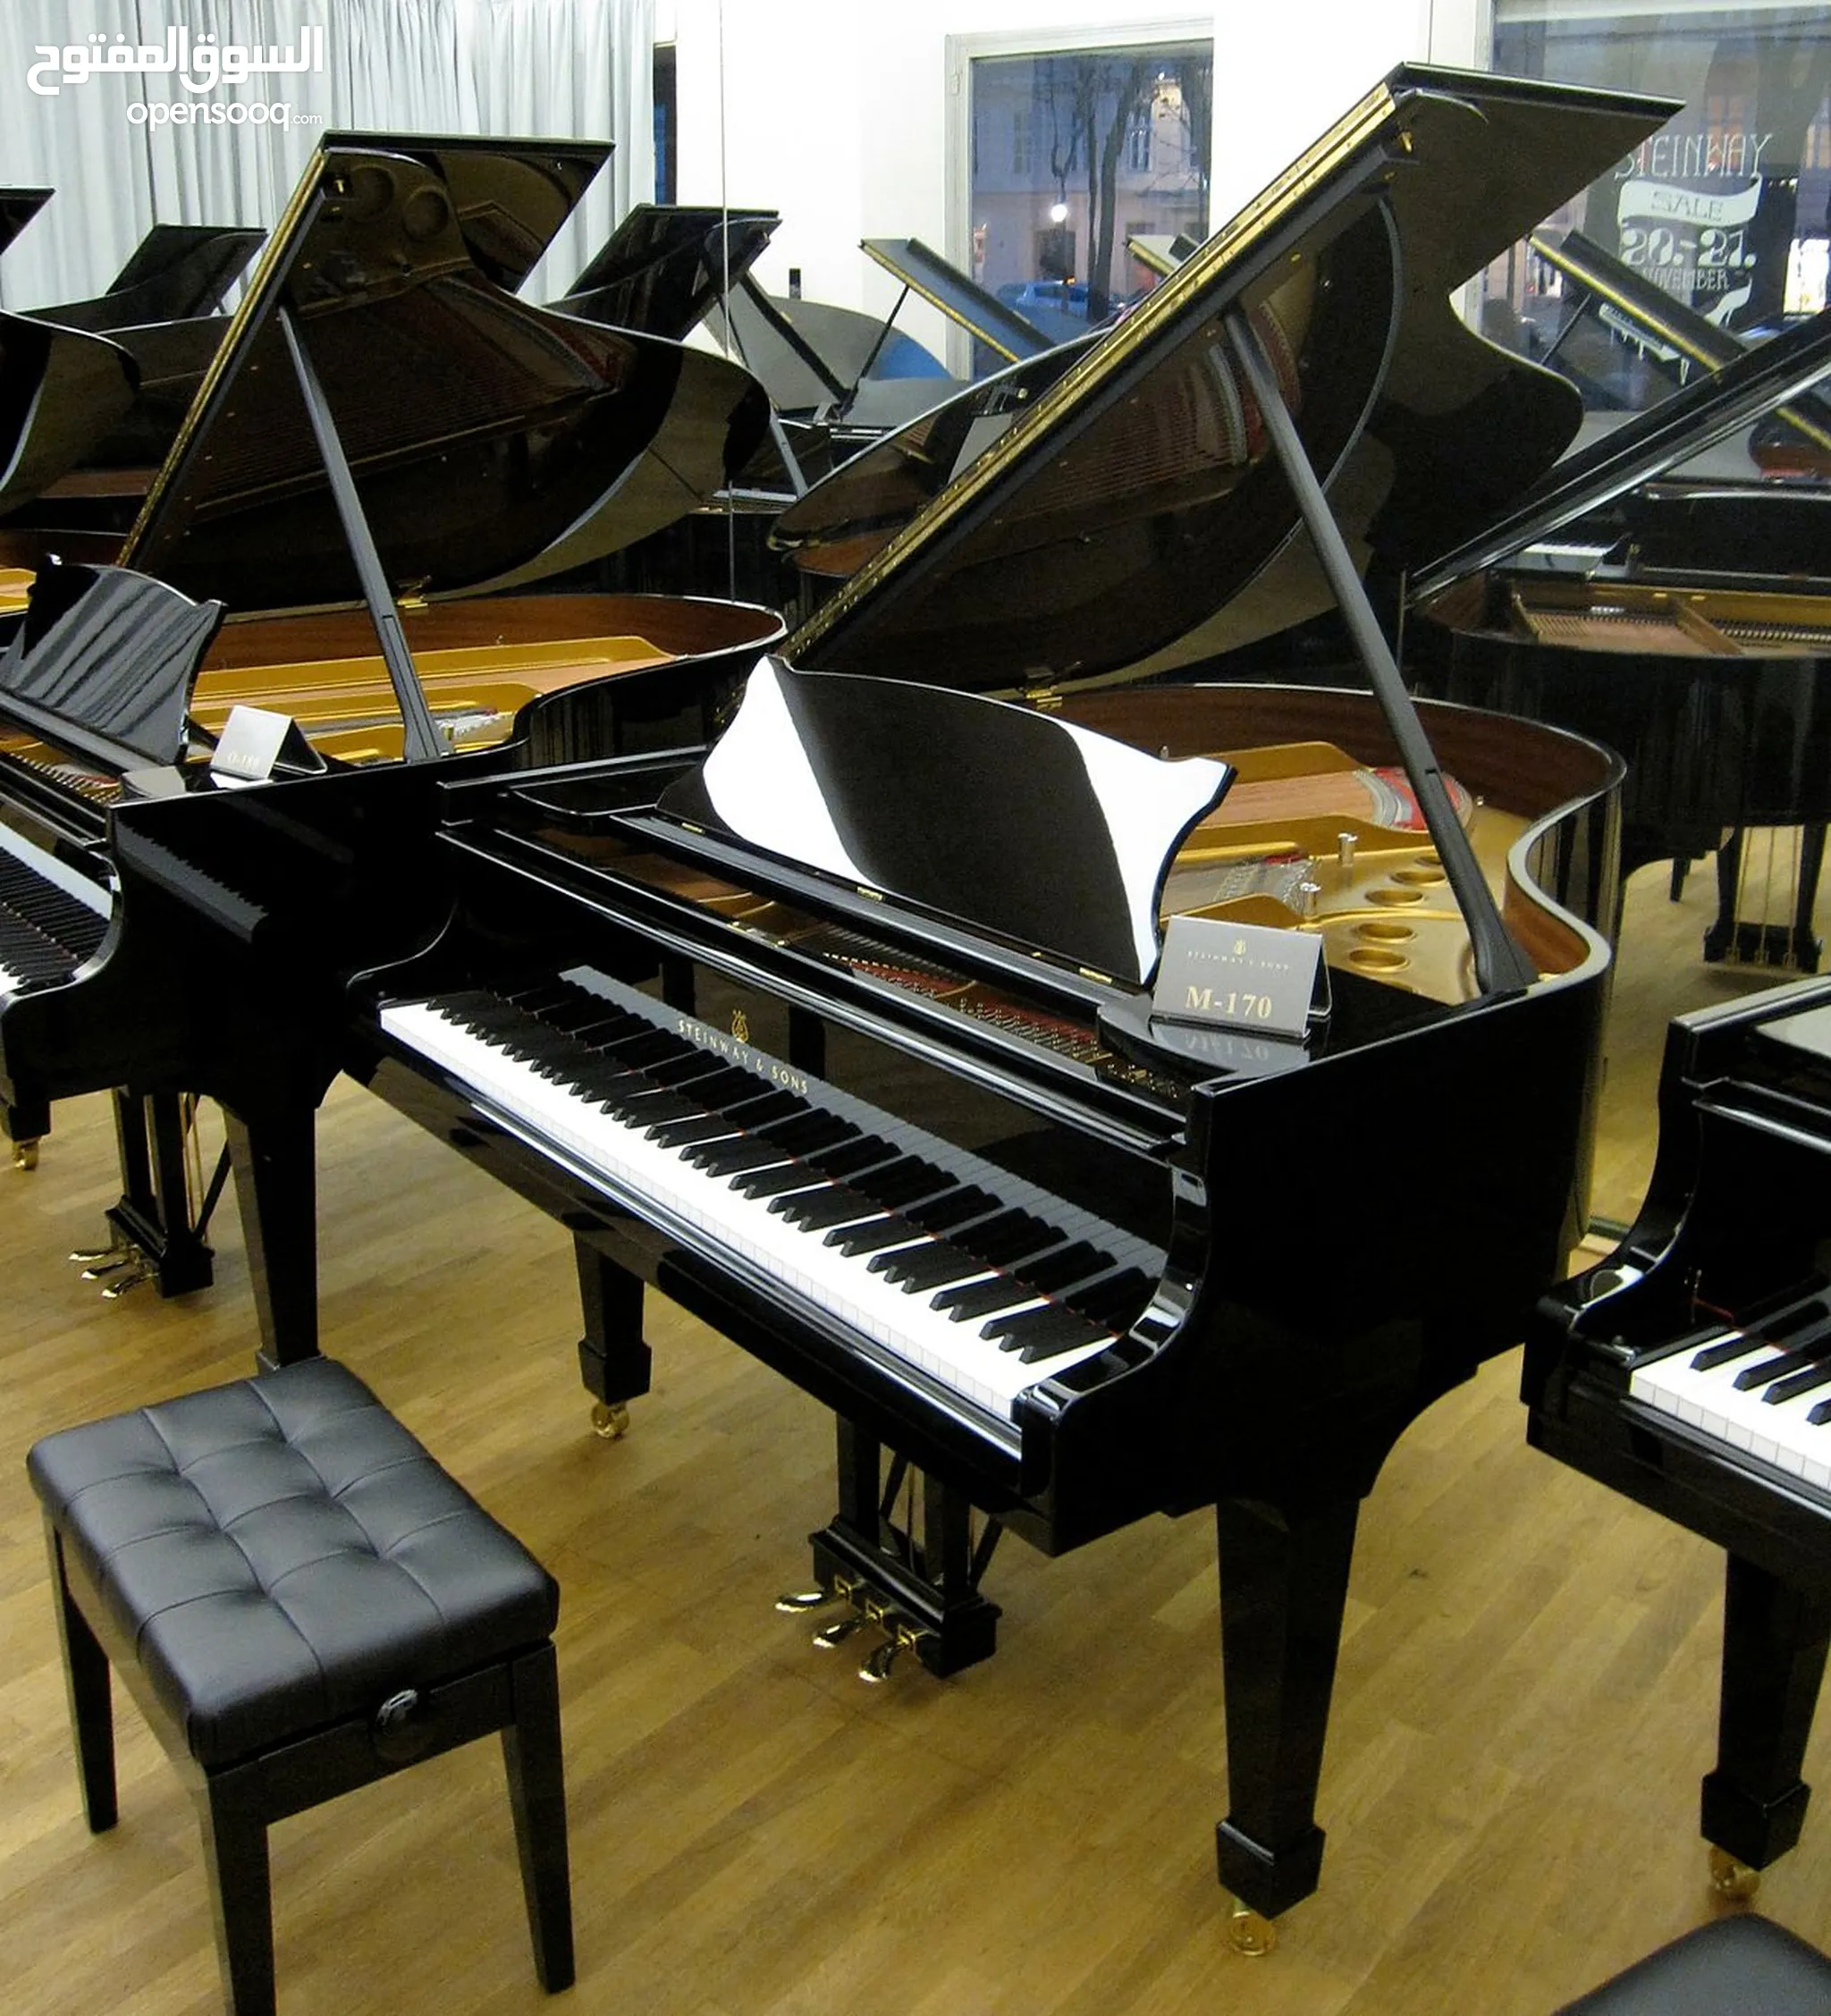 بيانو و اورج للبيع : الات موسيقية : افضل الاسعار في | السوق المفتوح